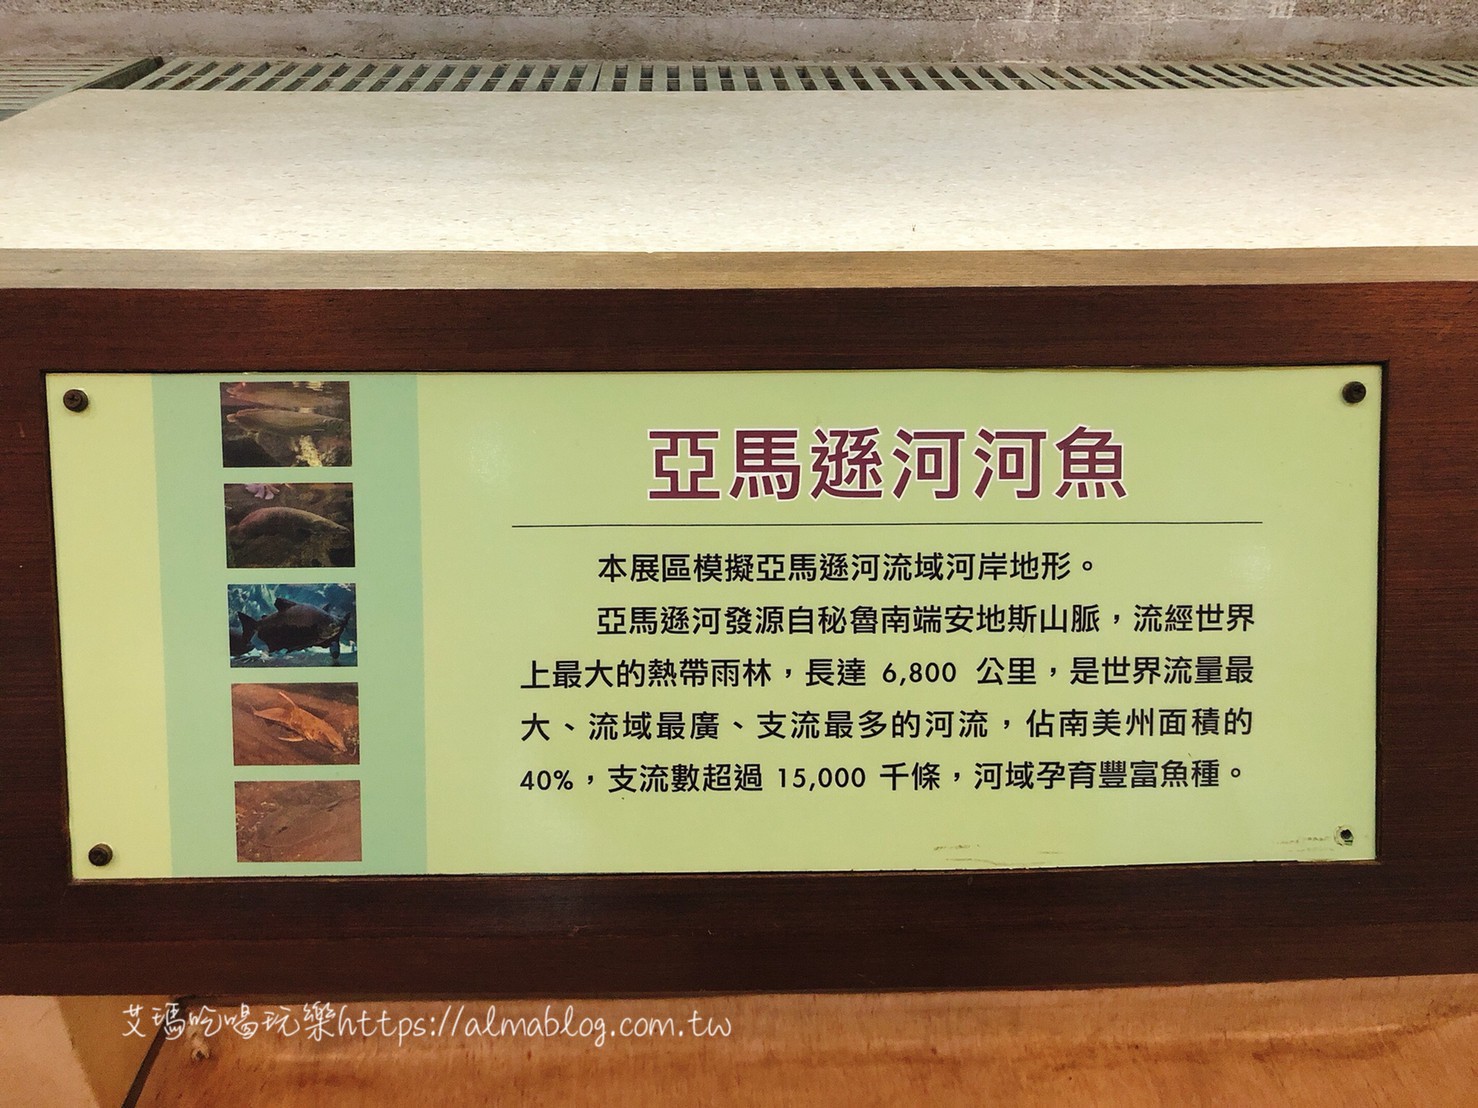 台中科學博物館植物園,熱帶雨林溫室,週末親子遊,銅板門票,雨天備案